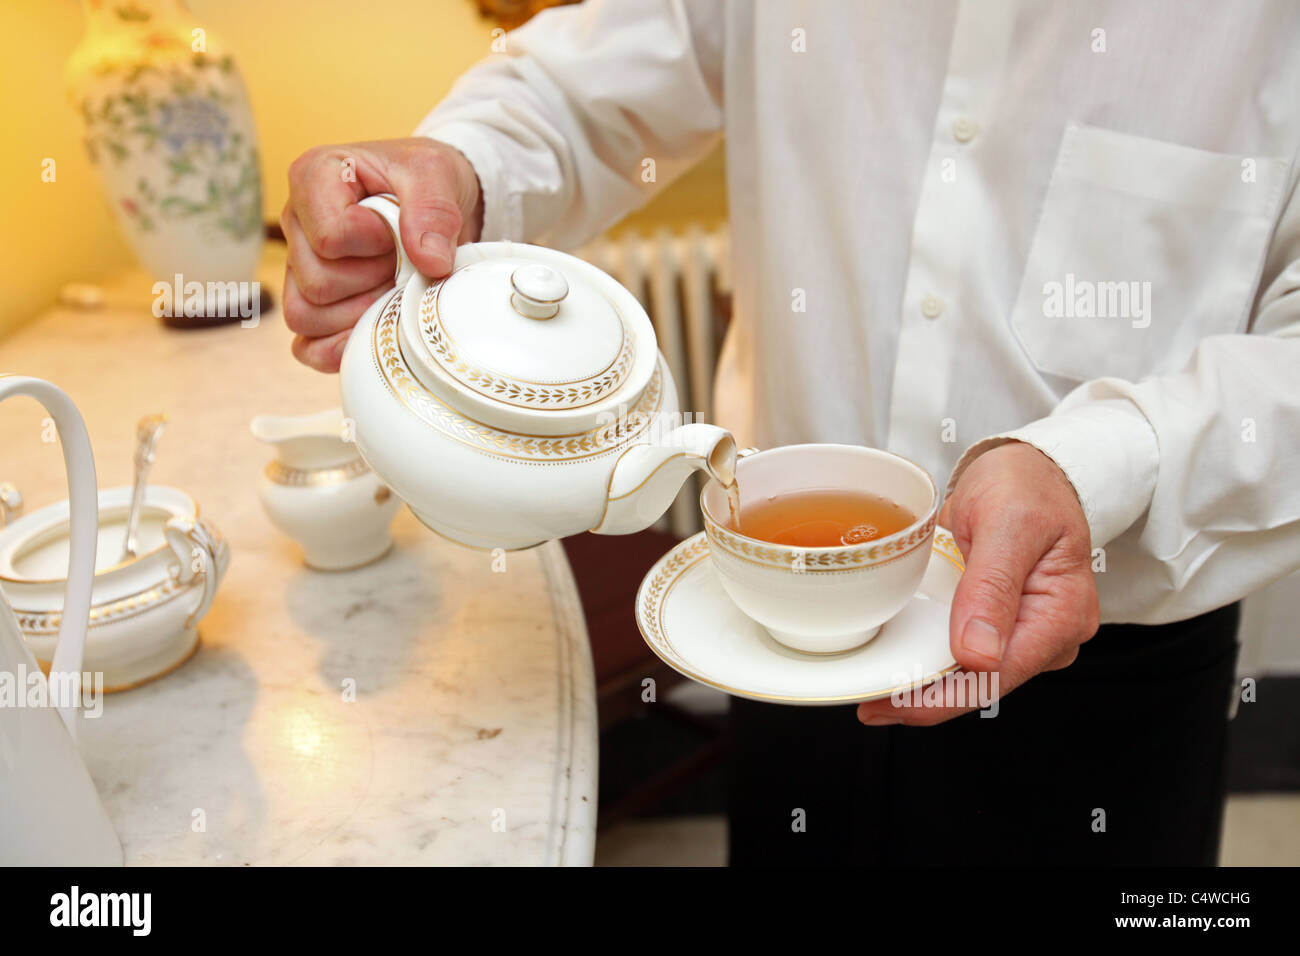 Waiter pouring tea into teacup. Stock Photo